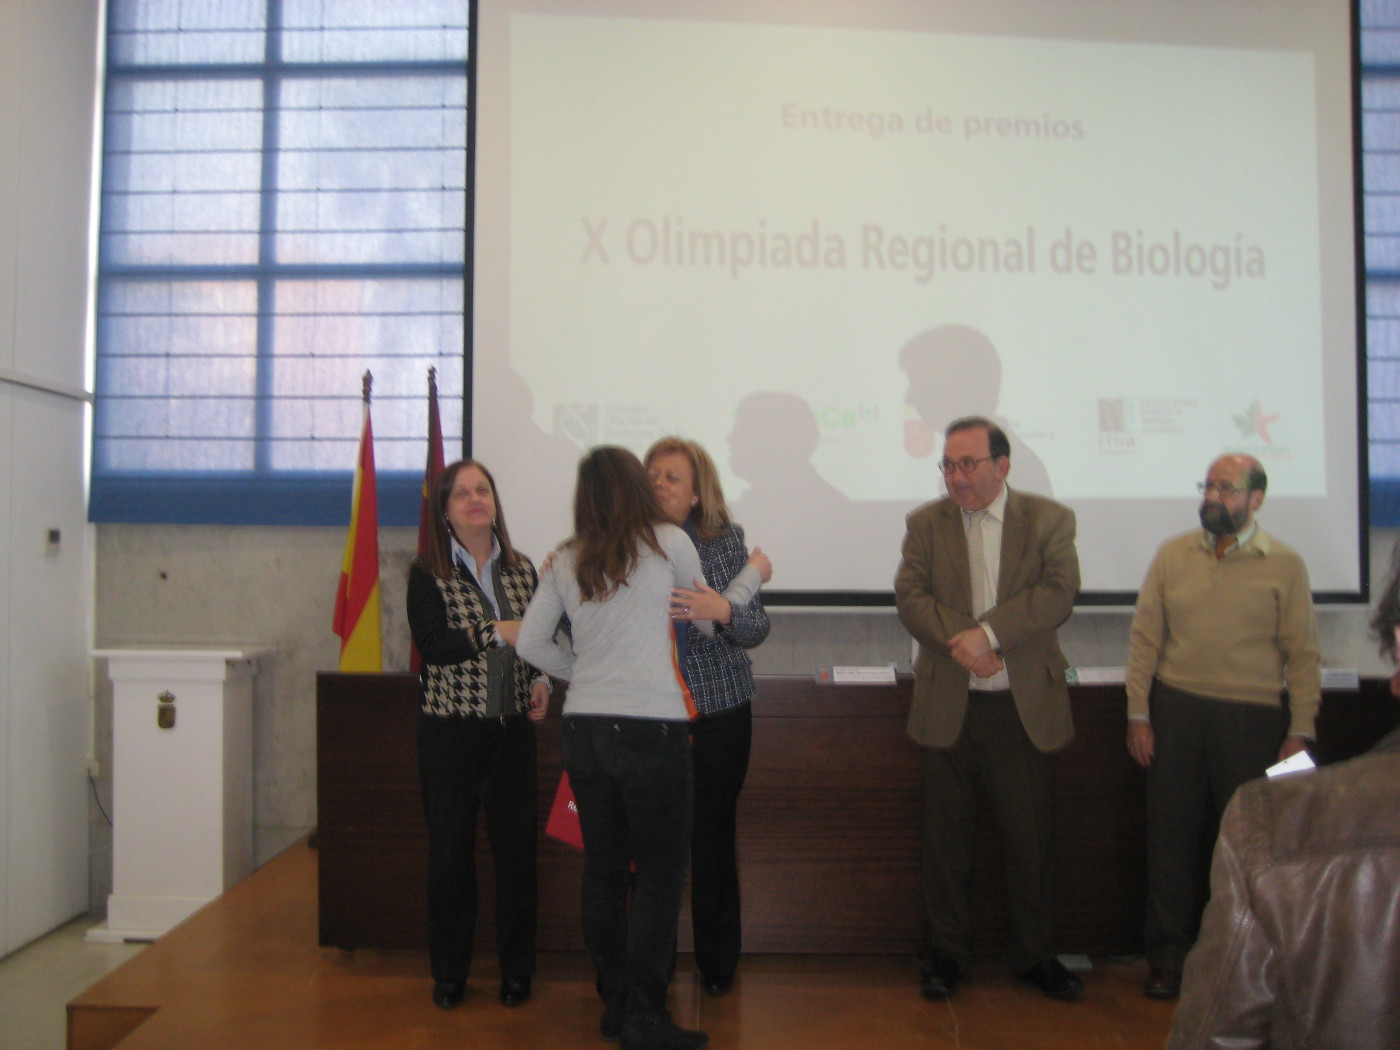 Irene Arnaldos Pérez, premiada en la X Olimpiada Regional de Biología